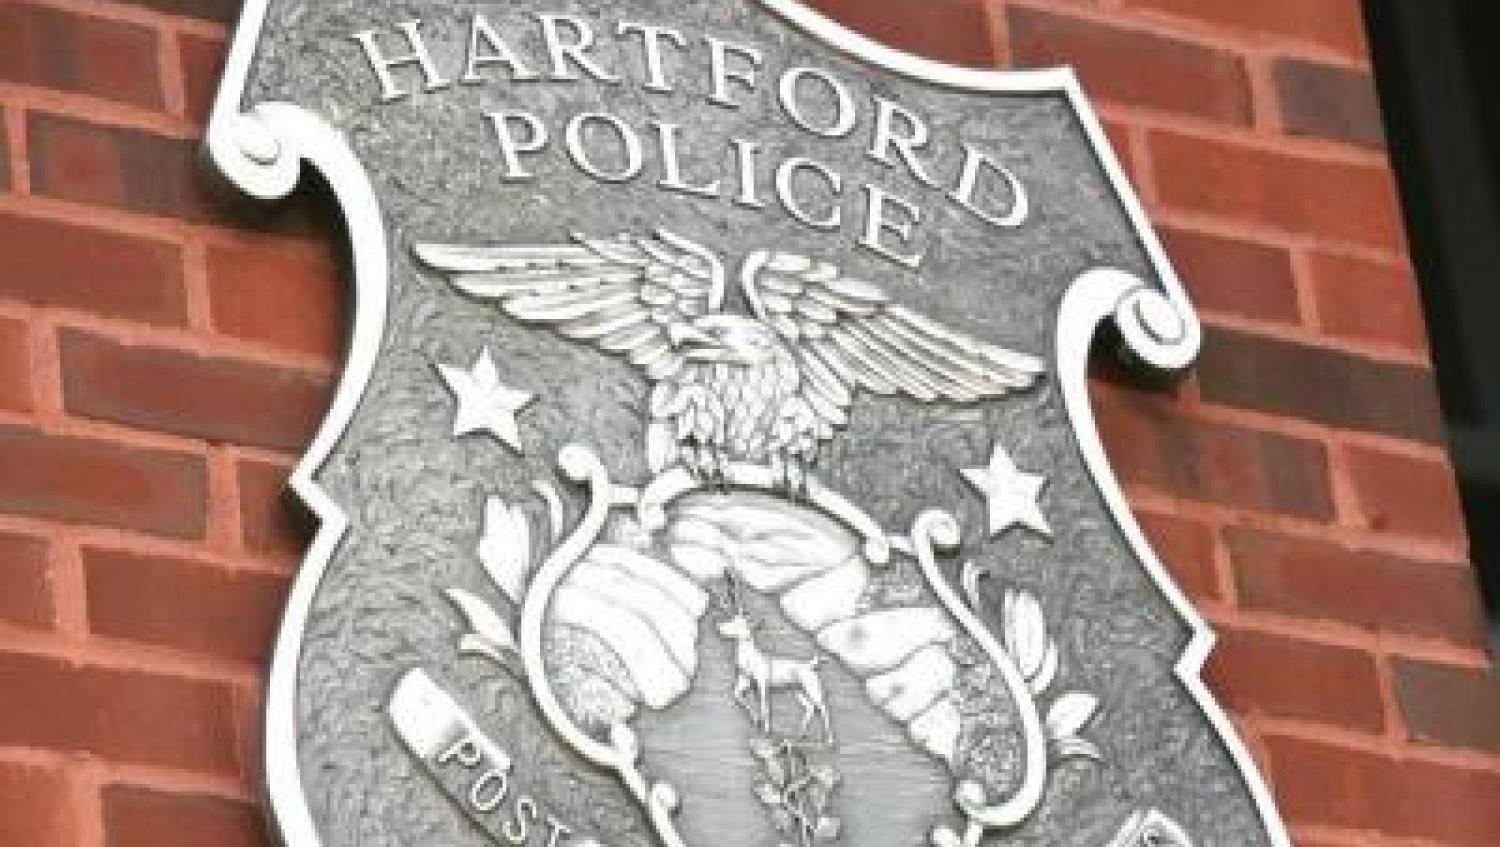 Hartford PD large shield logo on brick wall